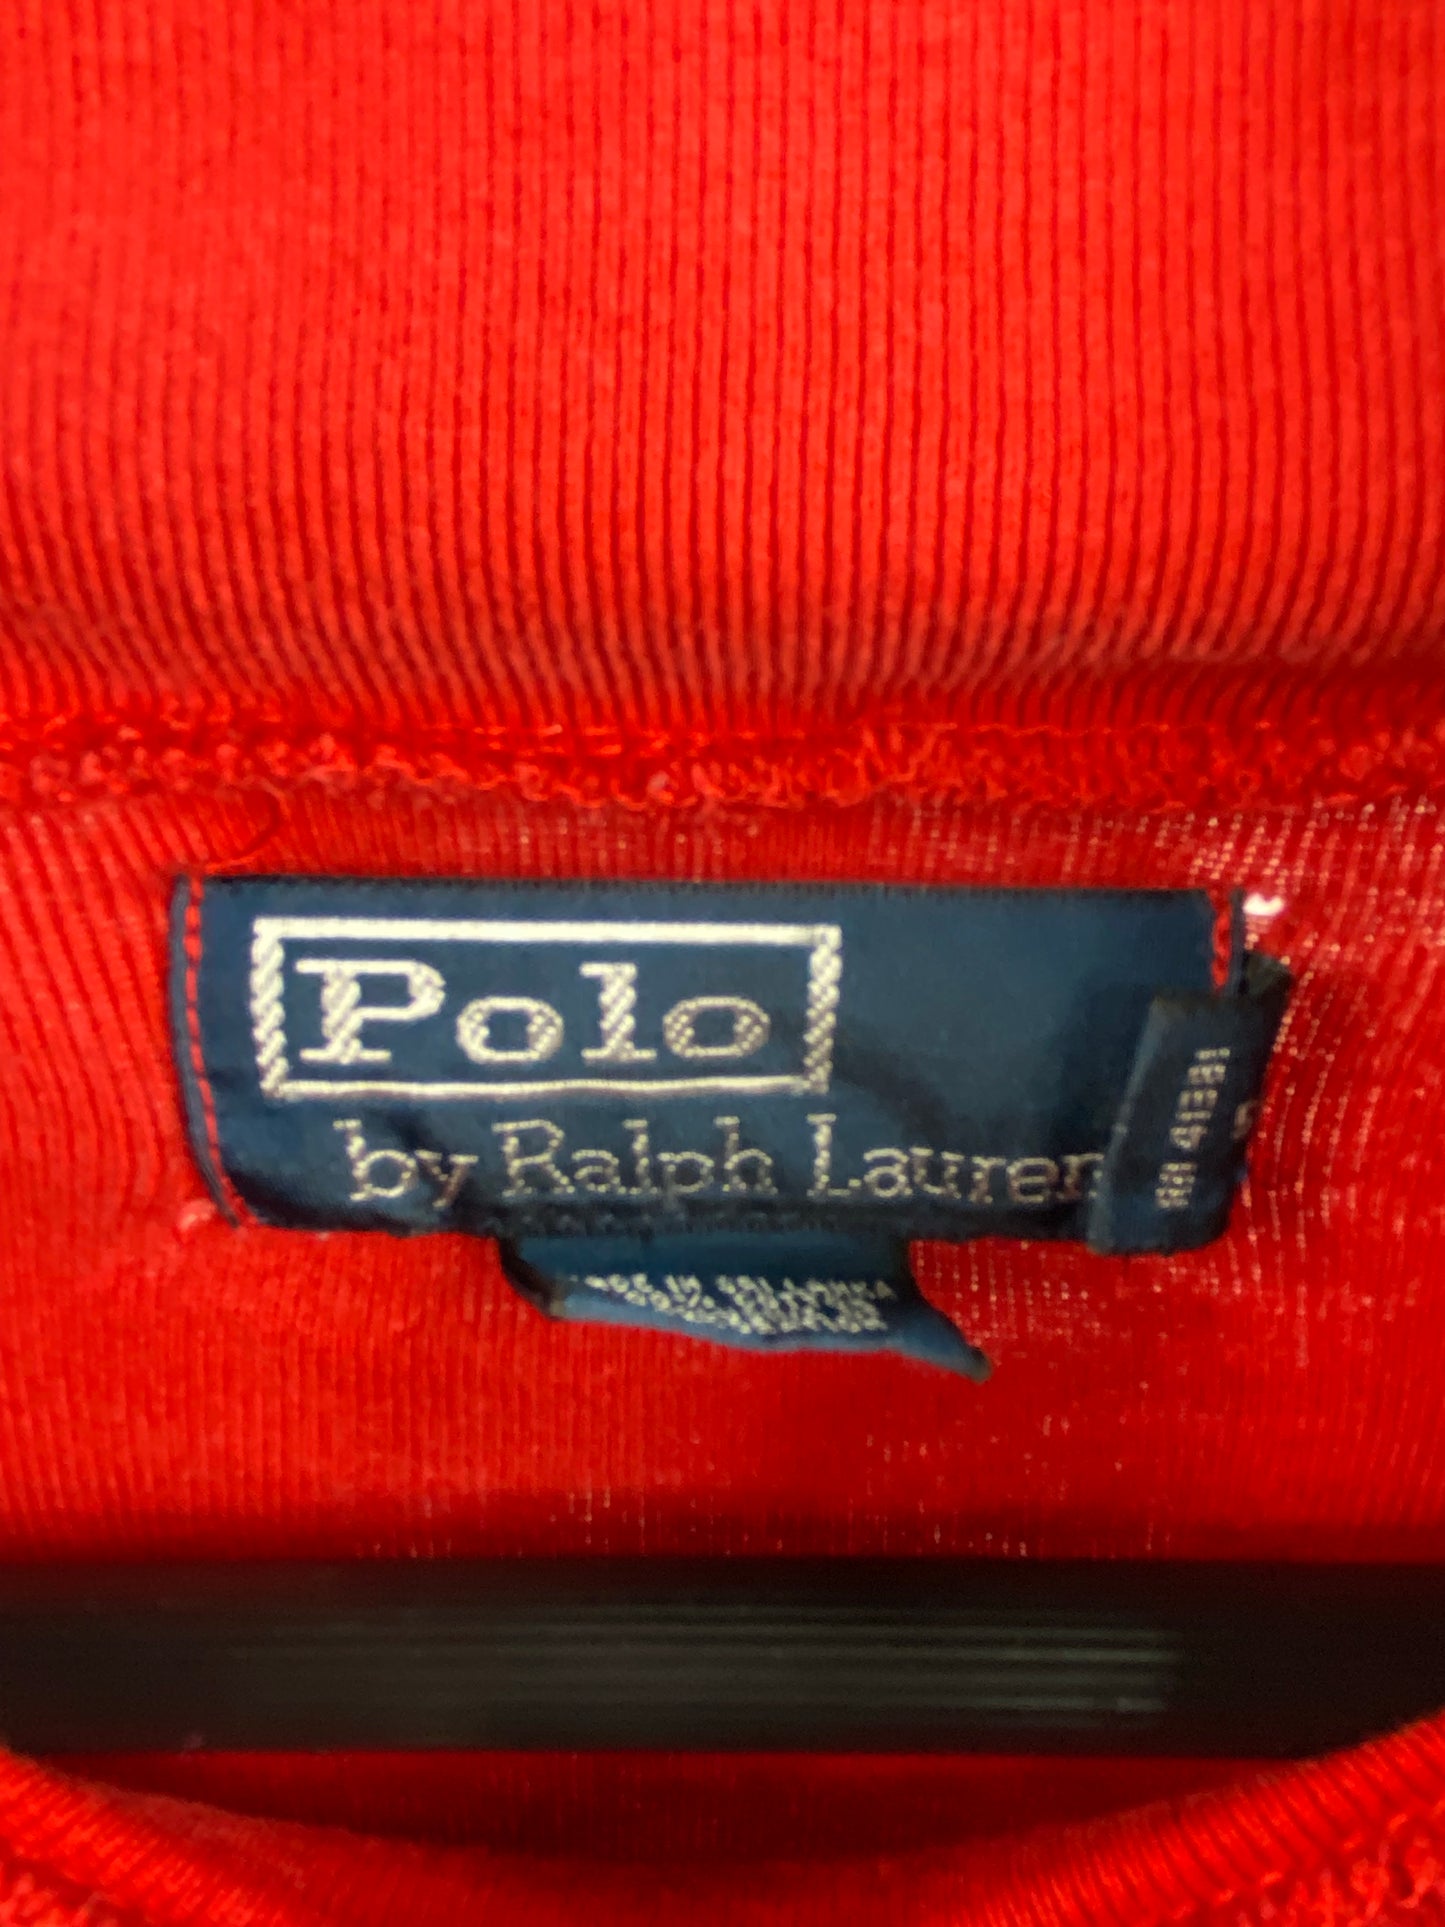 VTG Polo Ralph Lauren Crest Turtleneck Sweater Sz Med